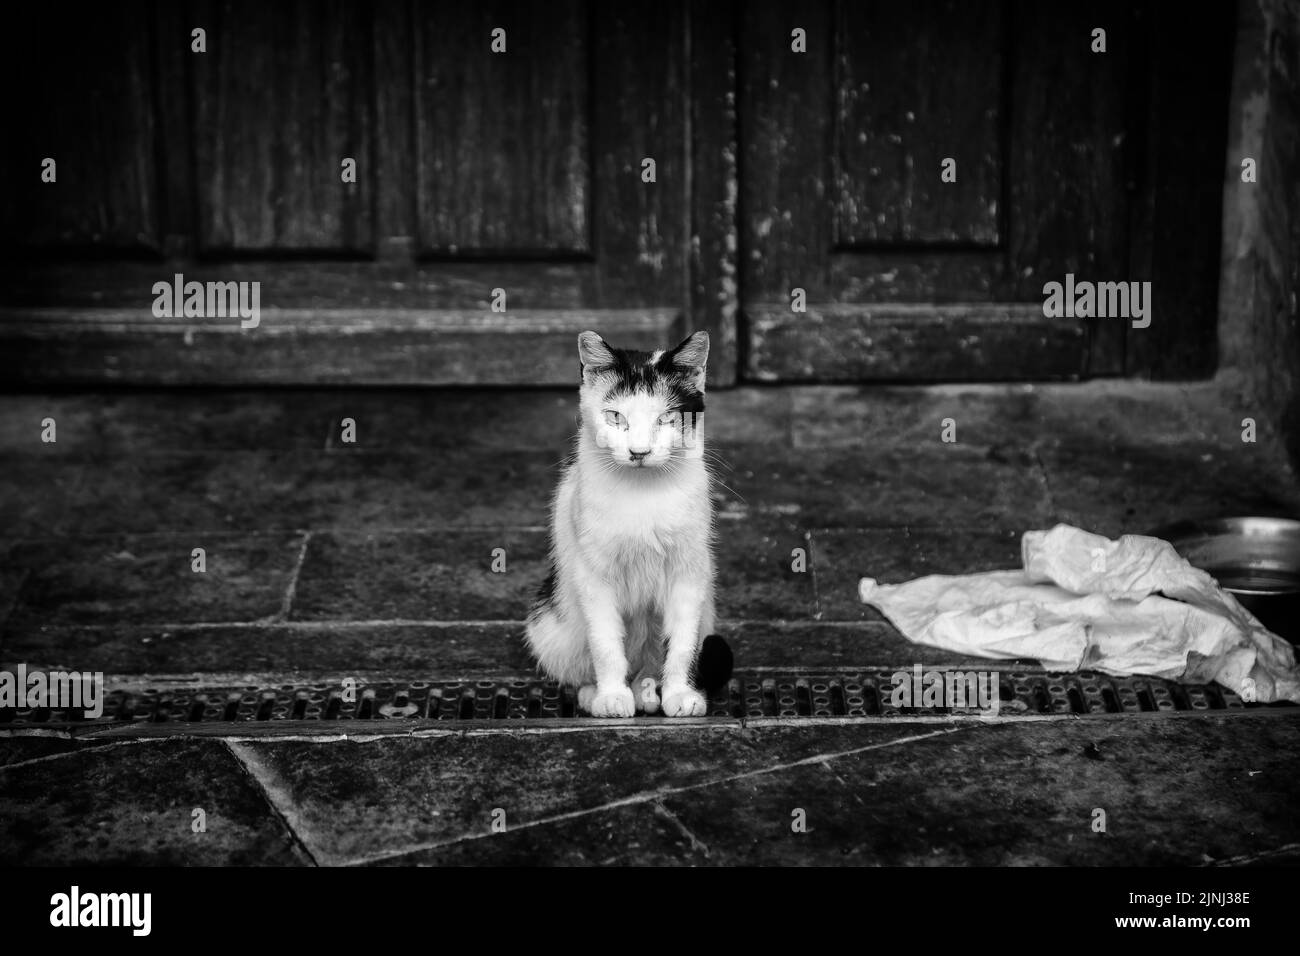 Abandoned street cats, stray animals, pets Stock Photo